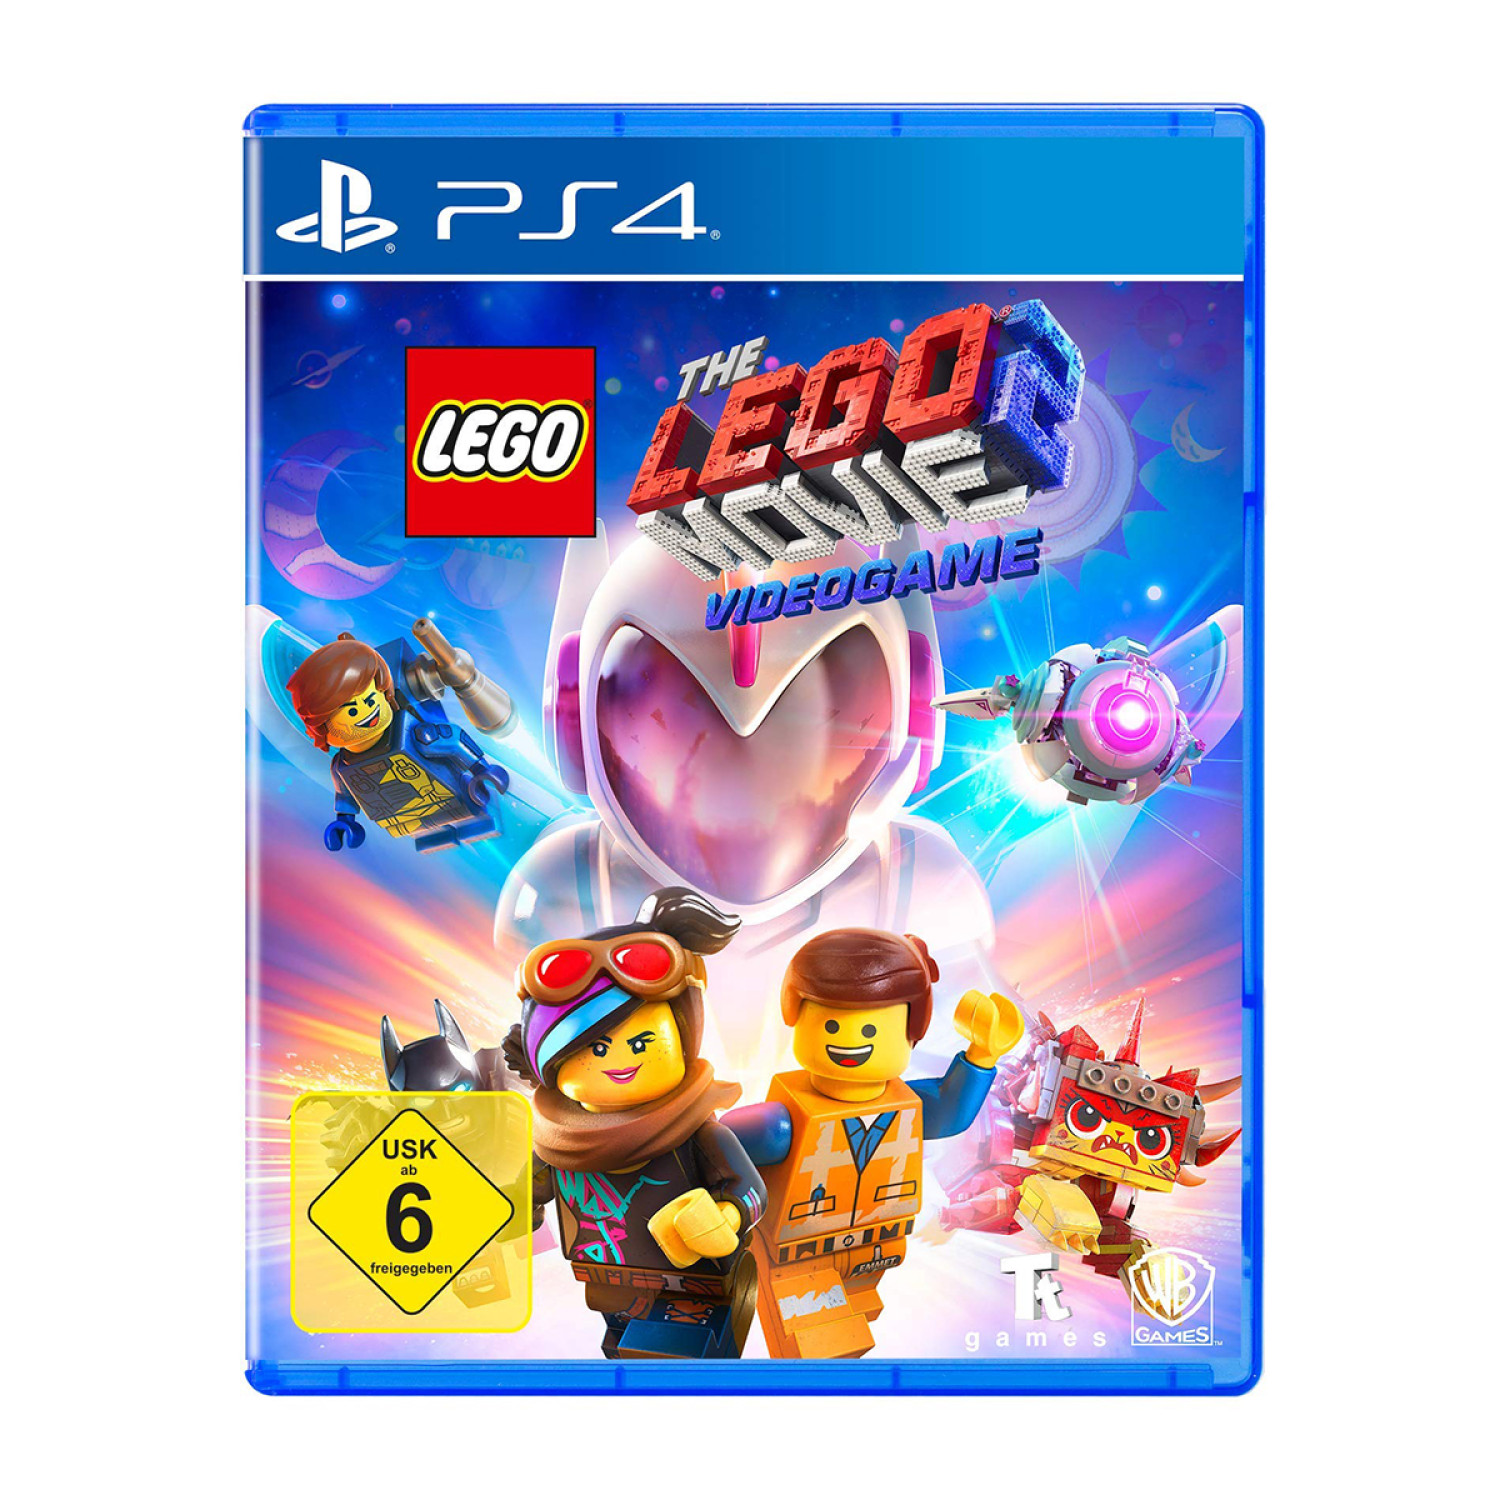 Ø¨Ø§Ø²ÛŒ The Lego Movie 2 Videogame - PS4